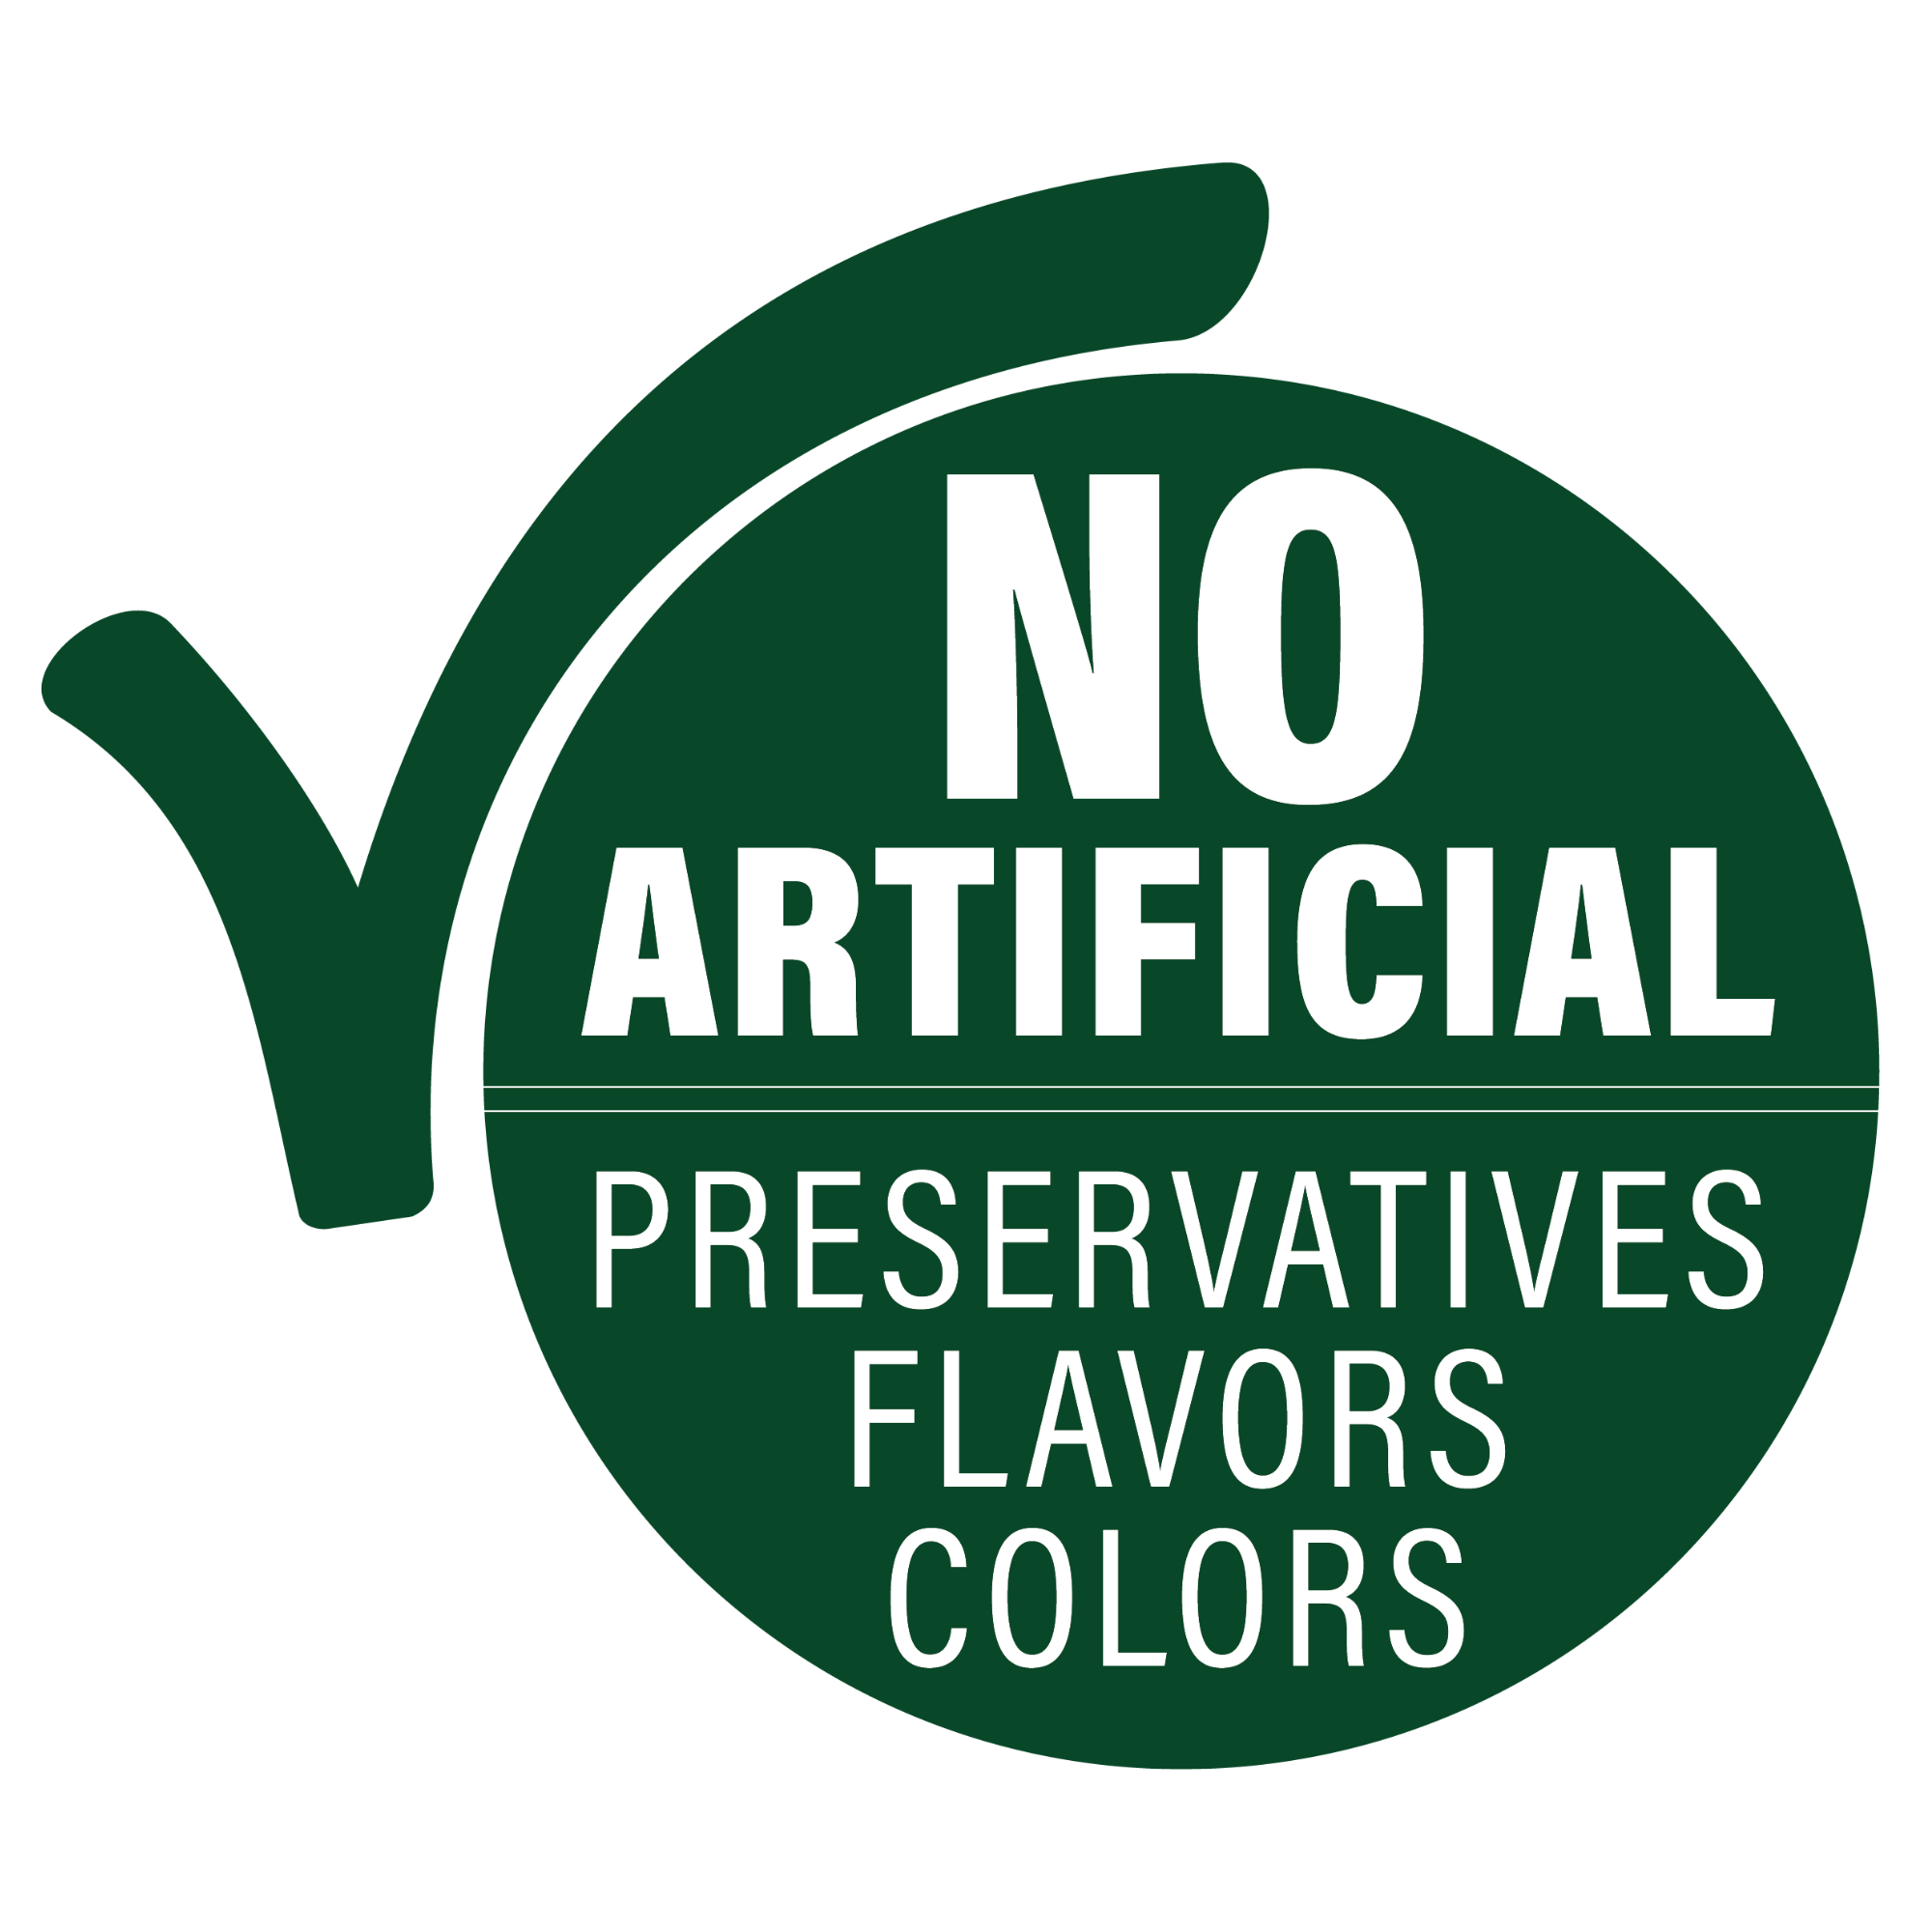 No artificial preservatives, flavors, or colors